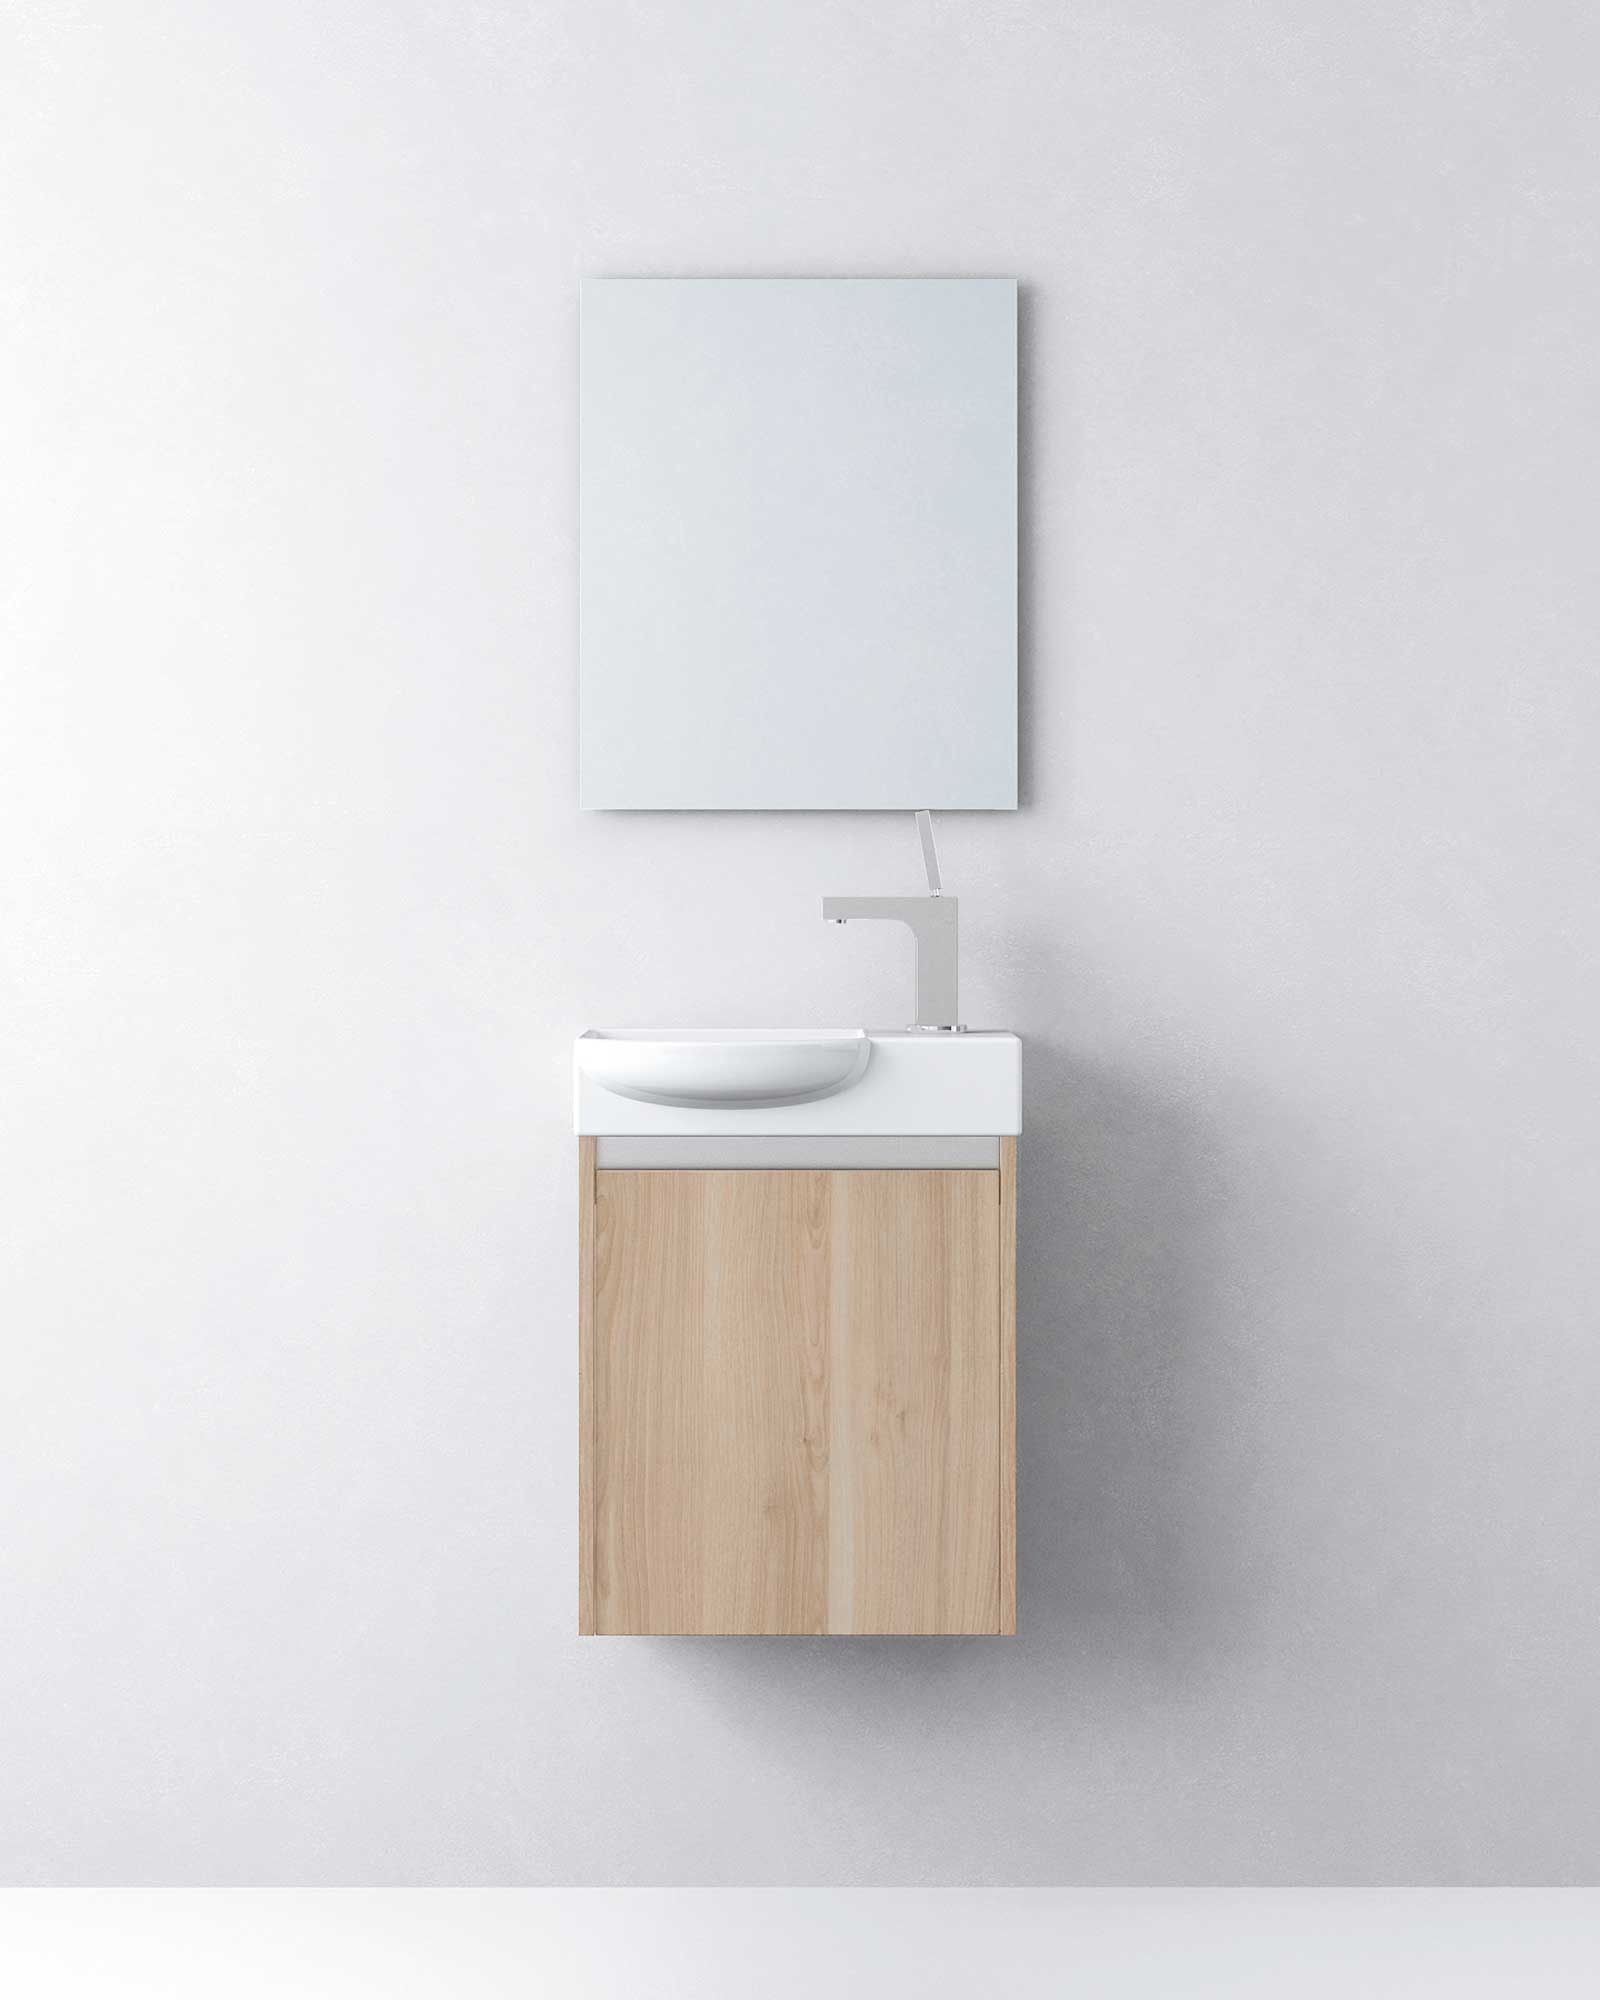  Mueble de baño estrecho de PVC para muebles de baño